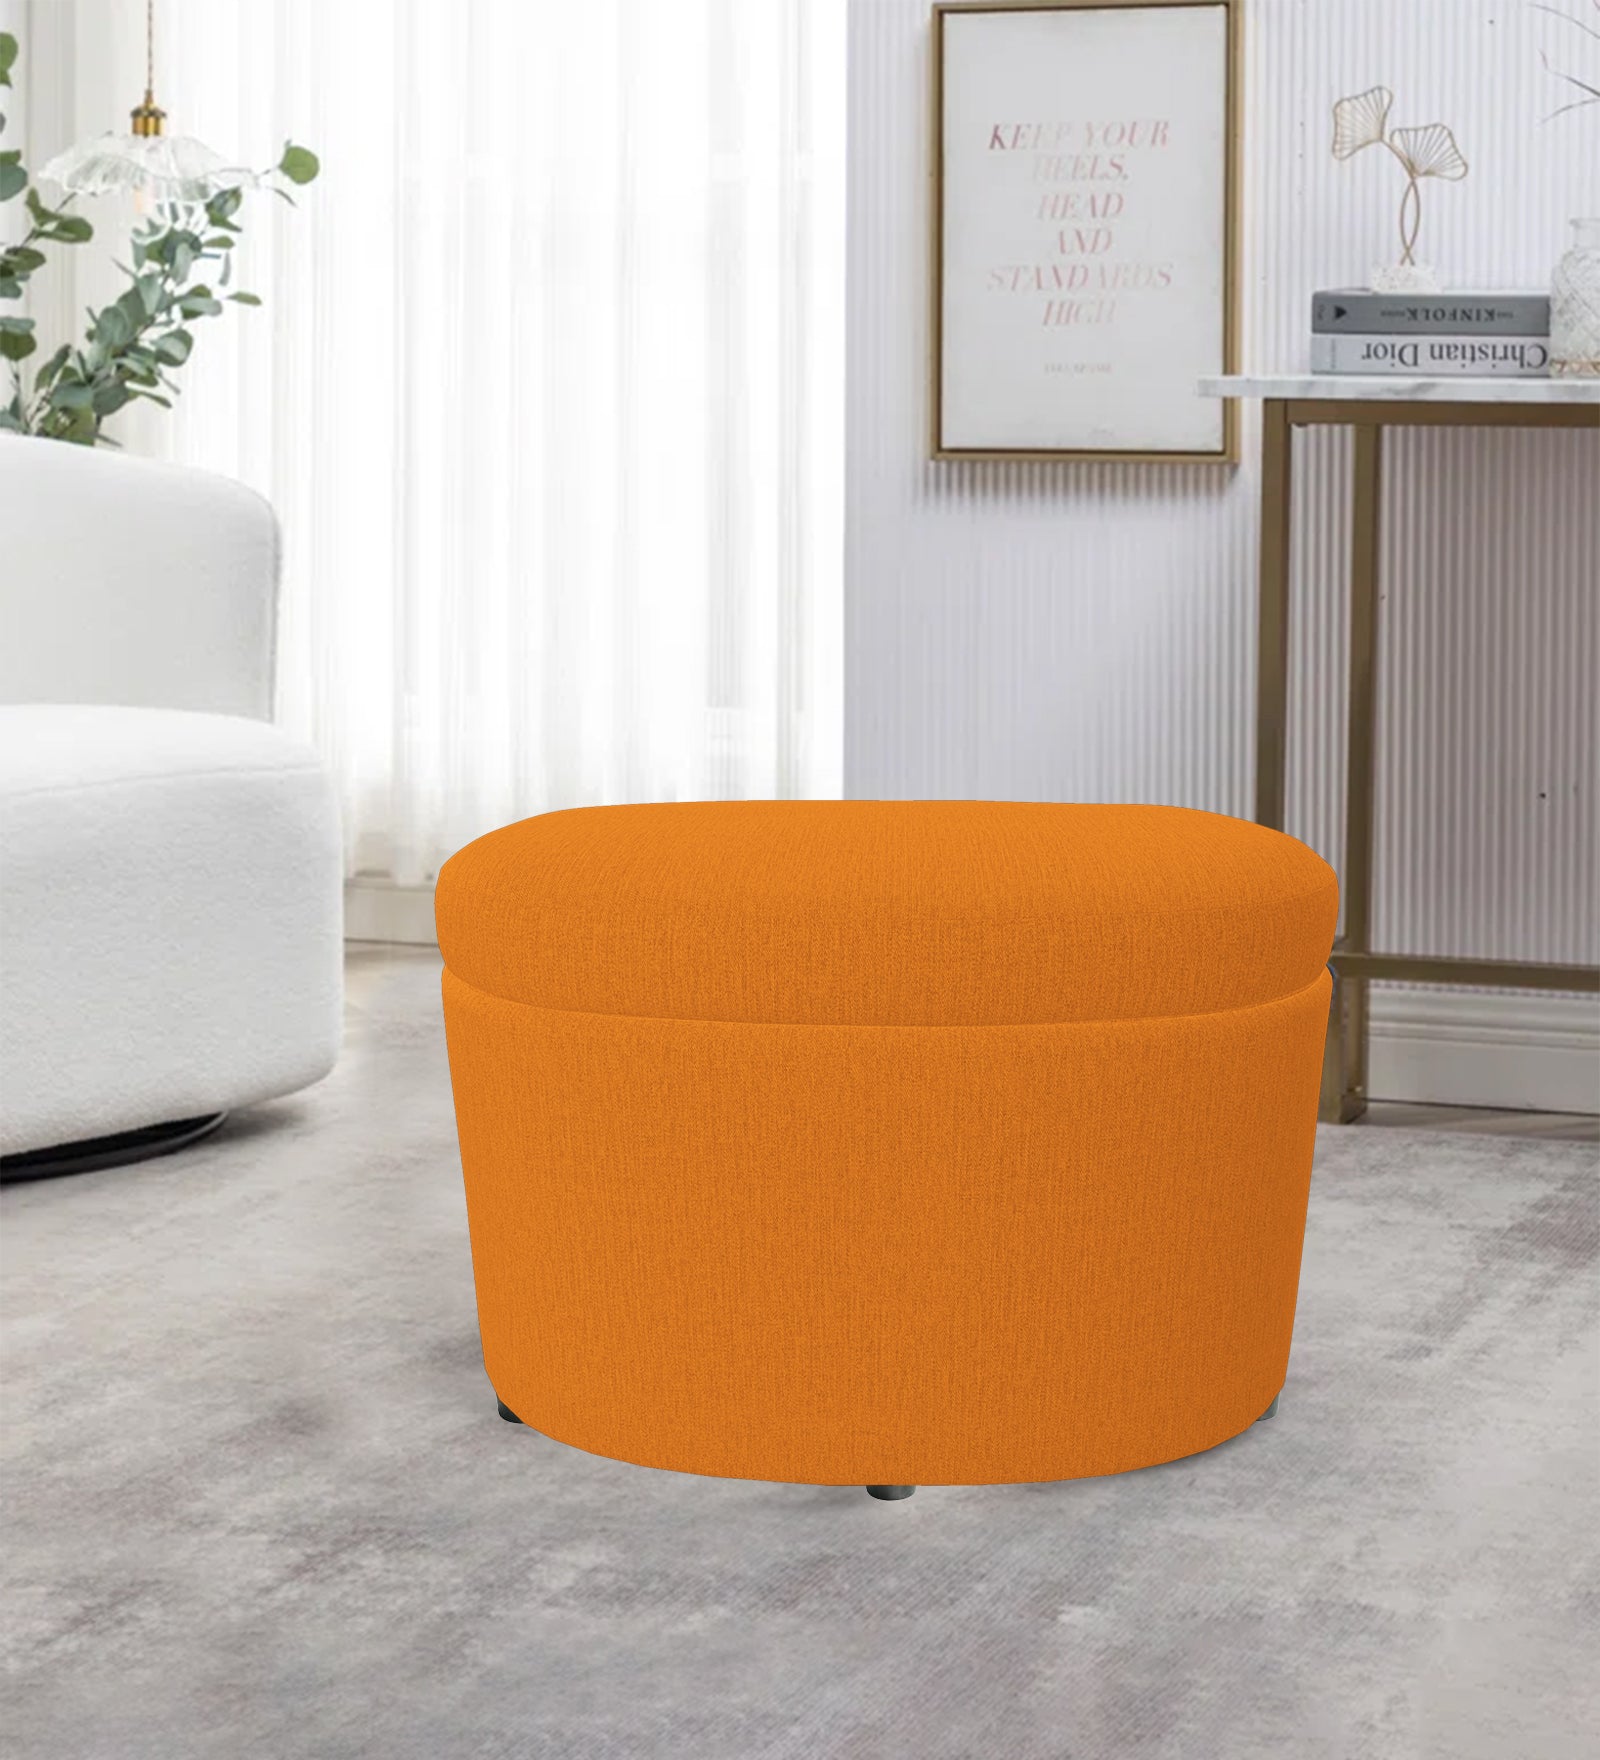 Ruggy Fabric Storage Ottoman in Vivid Orange Colour